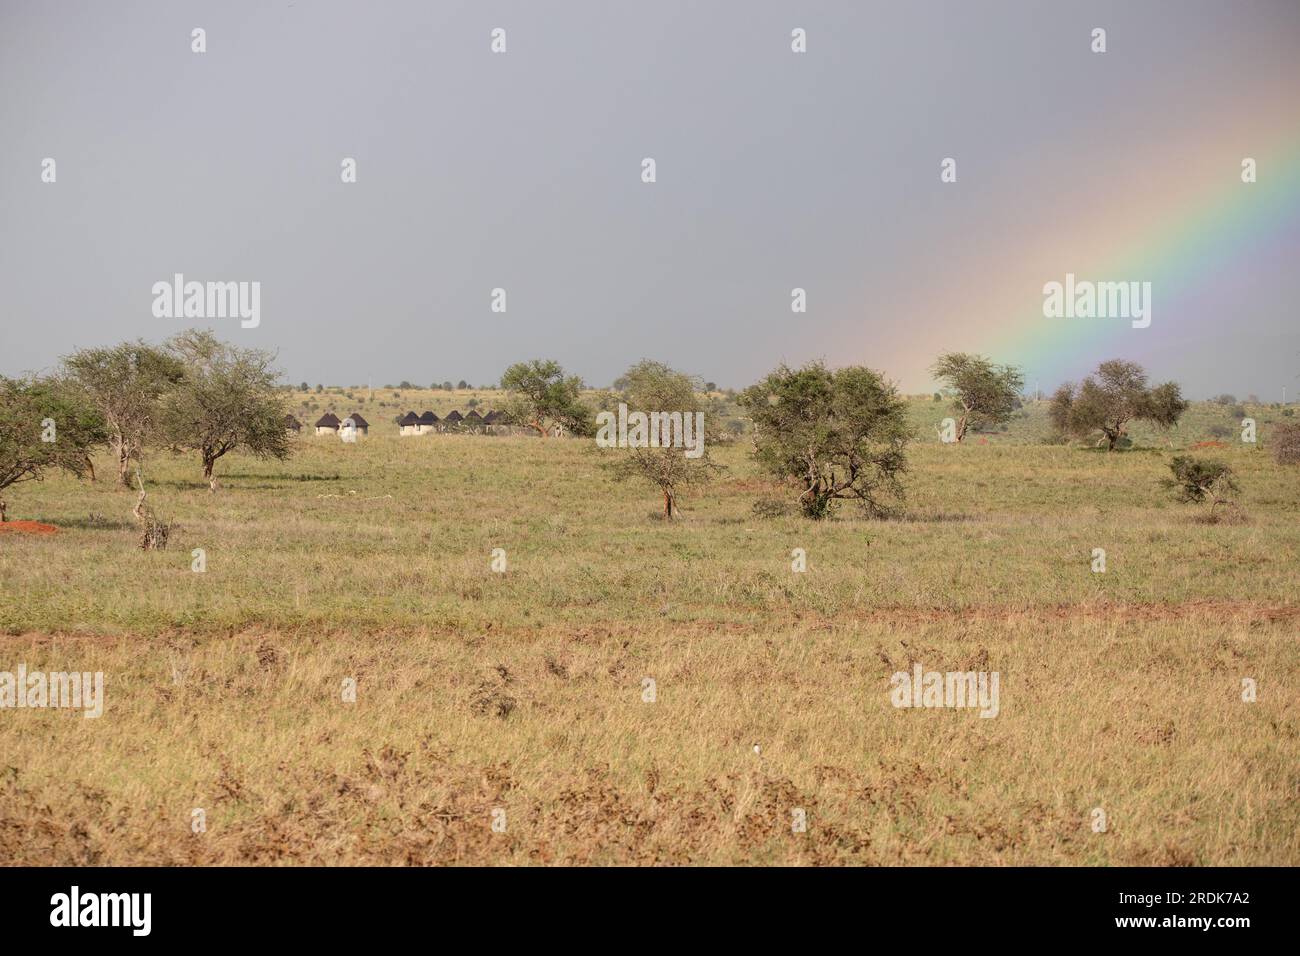 Regenzeit in Kenias Savanne. Wunderschöne Landschaft in Afrika zur Regenzeit, Sonne, Regen, Regenbogen. Safari-Fotografie in unglaublicher Entfernung Stockfoto